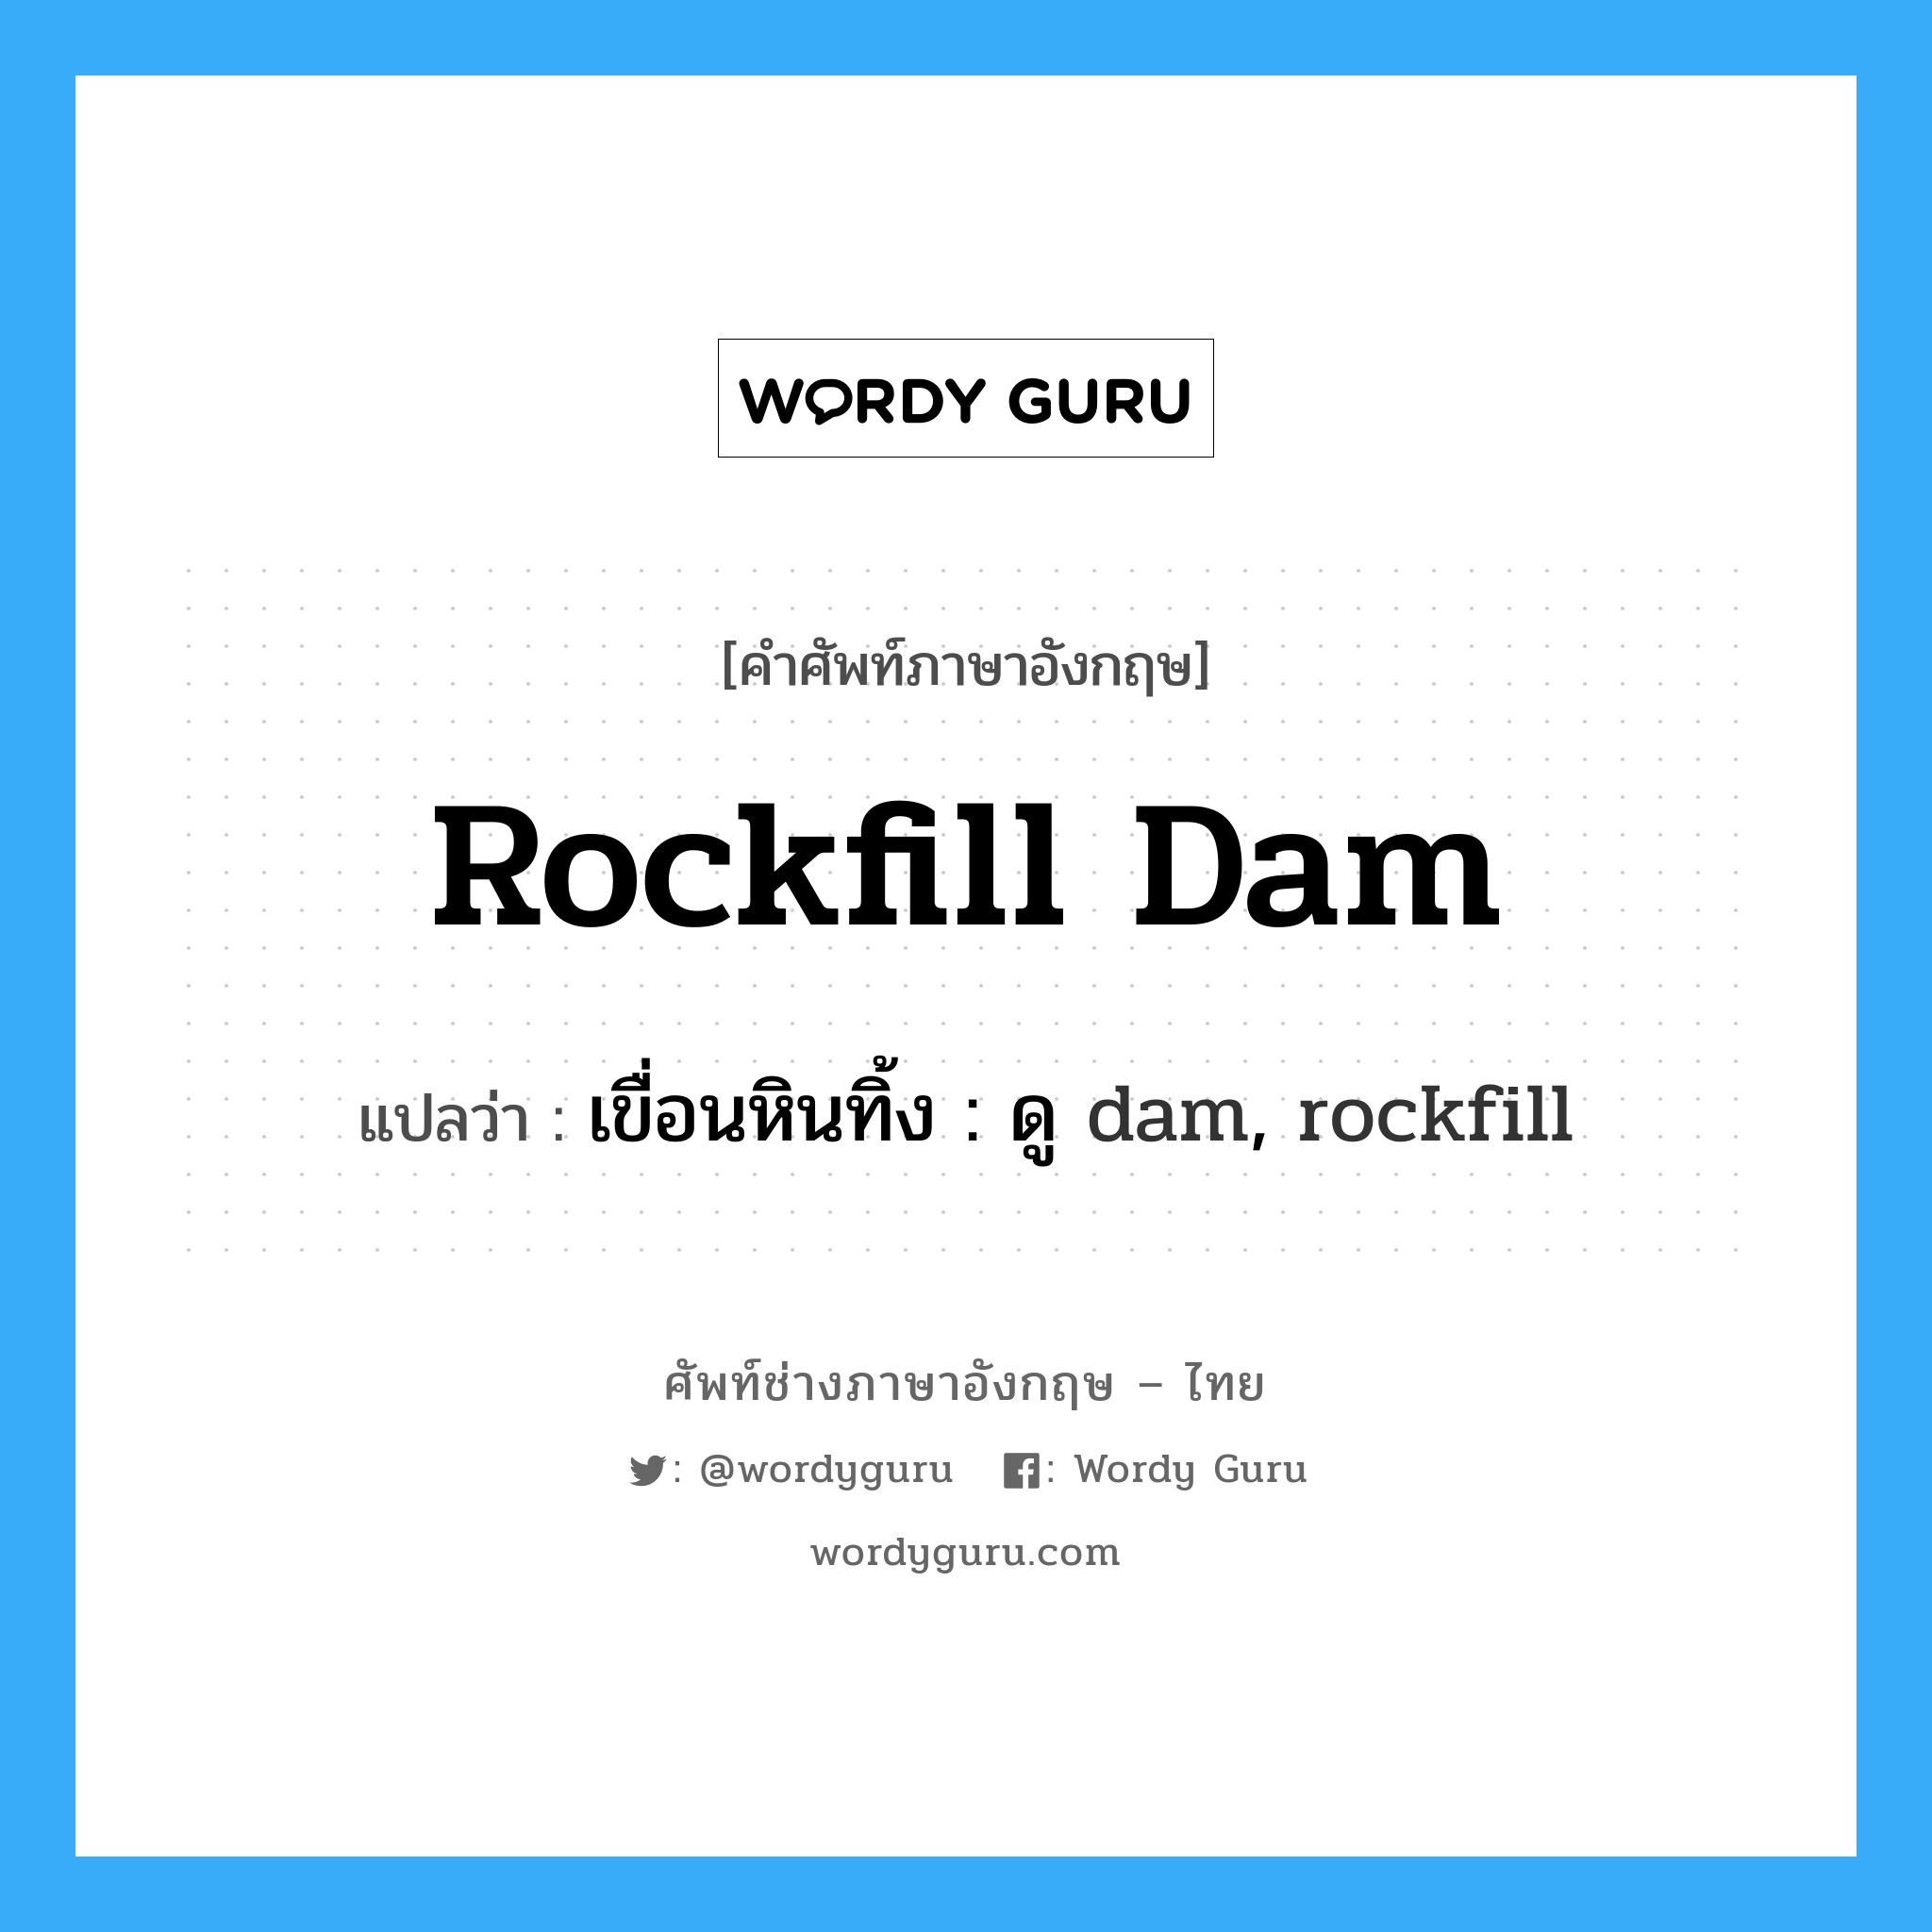 เขื่อนหินทิ้ง : ดู dam, rockfill ภาษาอังกฤษ?, คำศัพท์ช่างภาษาอังกฤษ - ไทย เขื่อนหินทิ้ง : ดู dam, rockfill คำศัพท์ภาษาอังกฤษ เขื่อนหินทิ้ง : ดู dam, rockfill แปลว่า rockfill dam